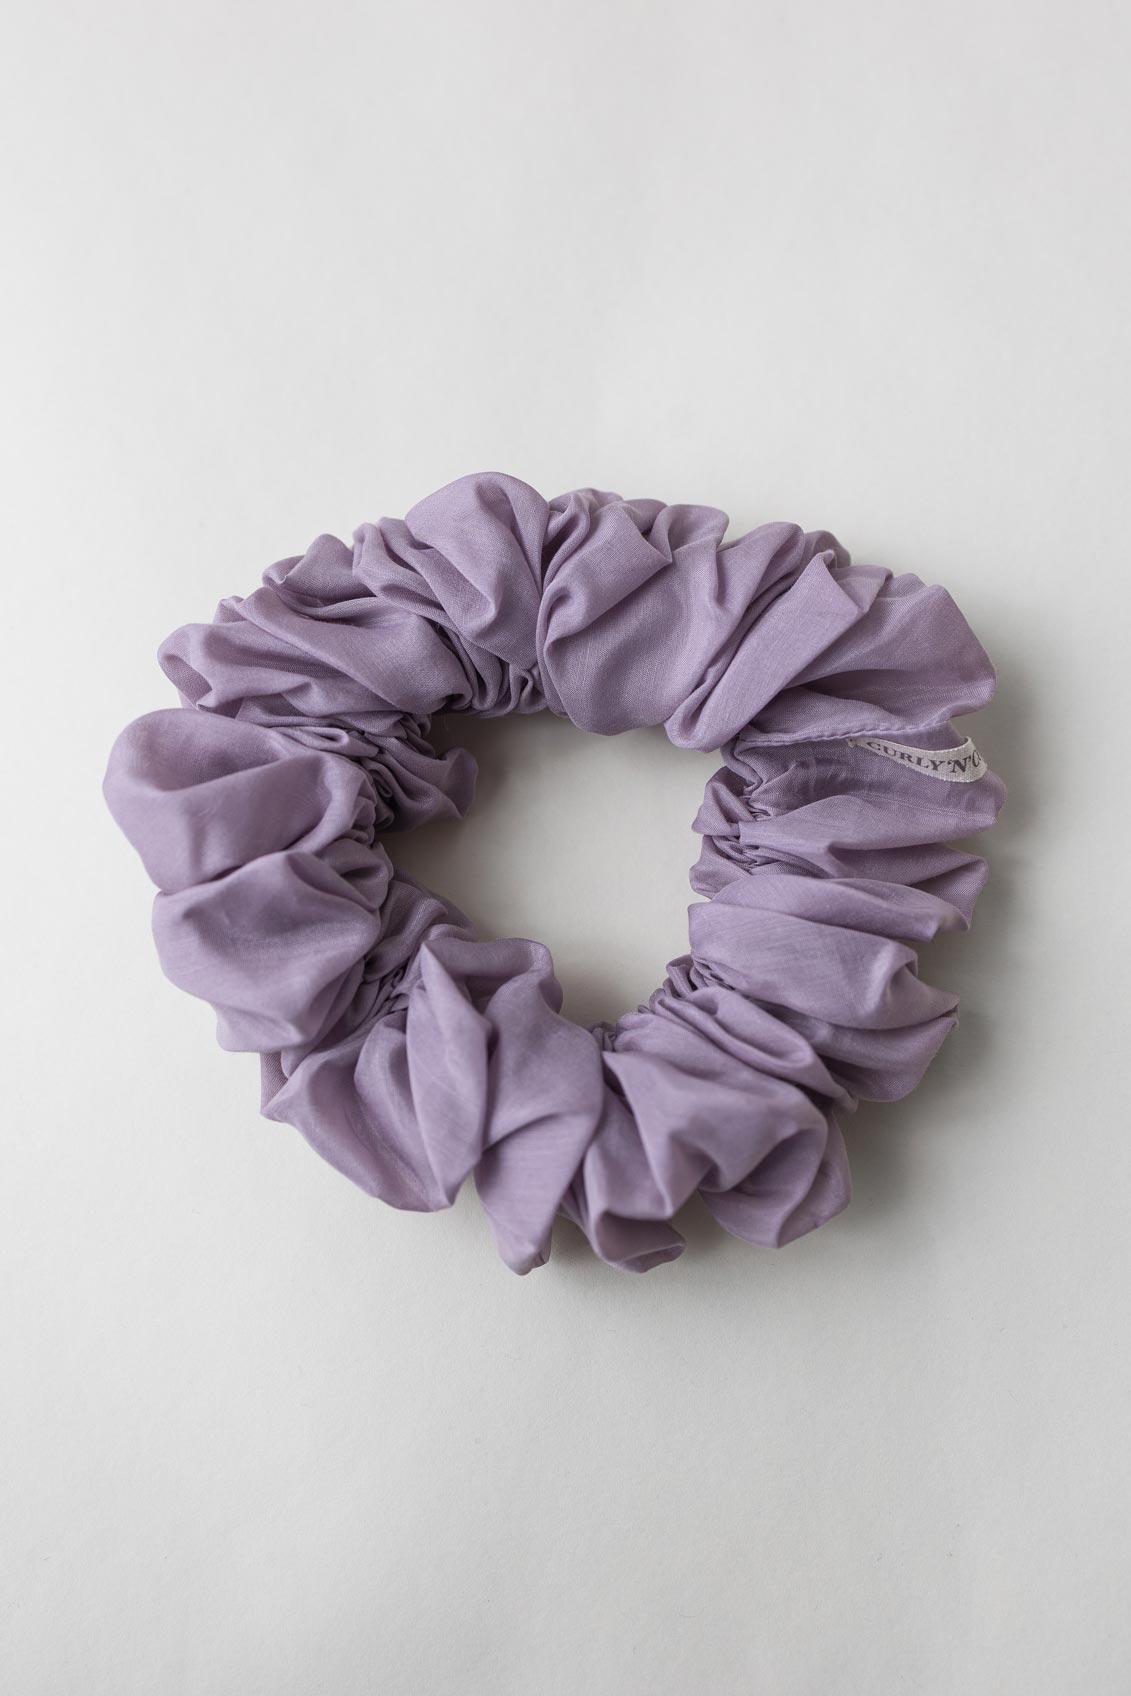 Scrunchie (Cotton-Silk) – Haargummi aus Baumwolle und Seide - Baumwollseide Hellviolett / XXL